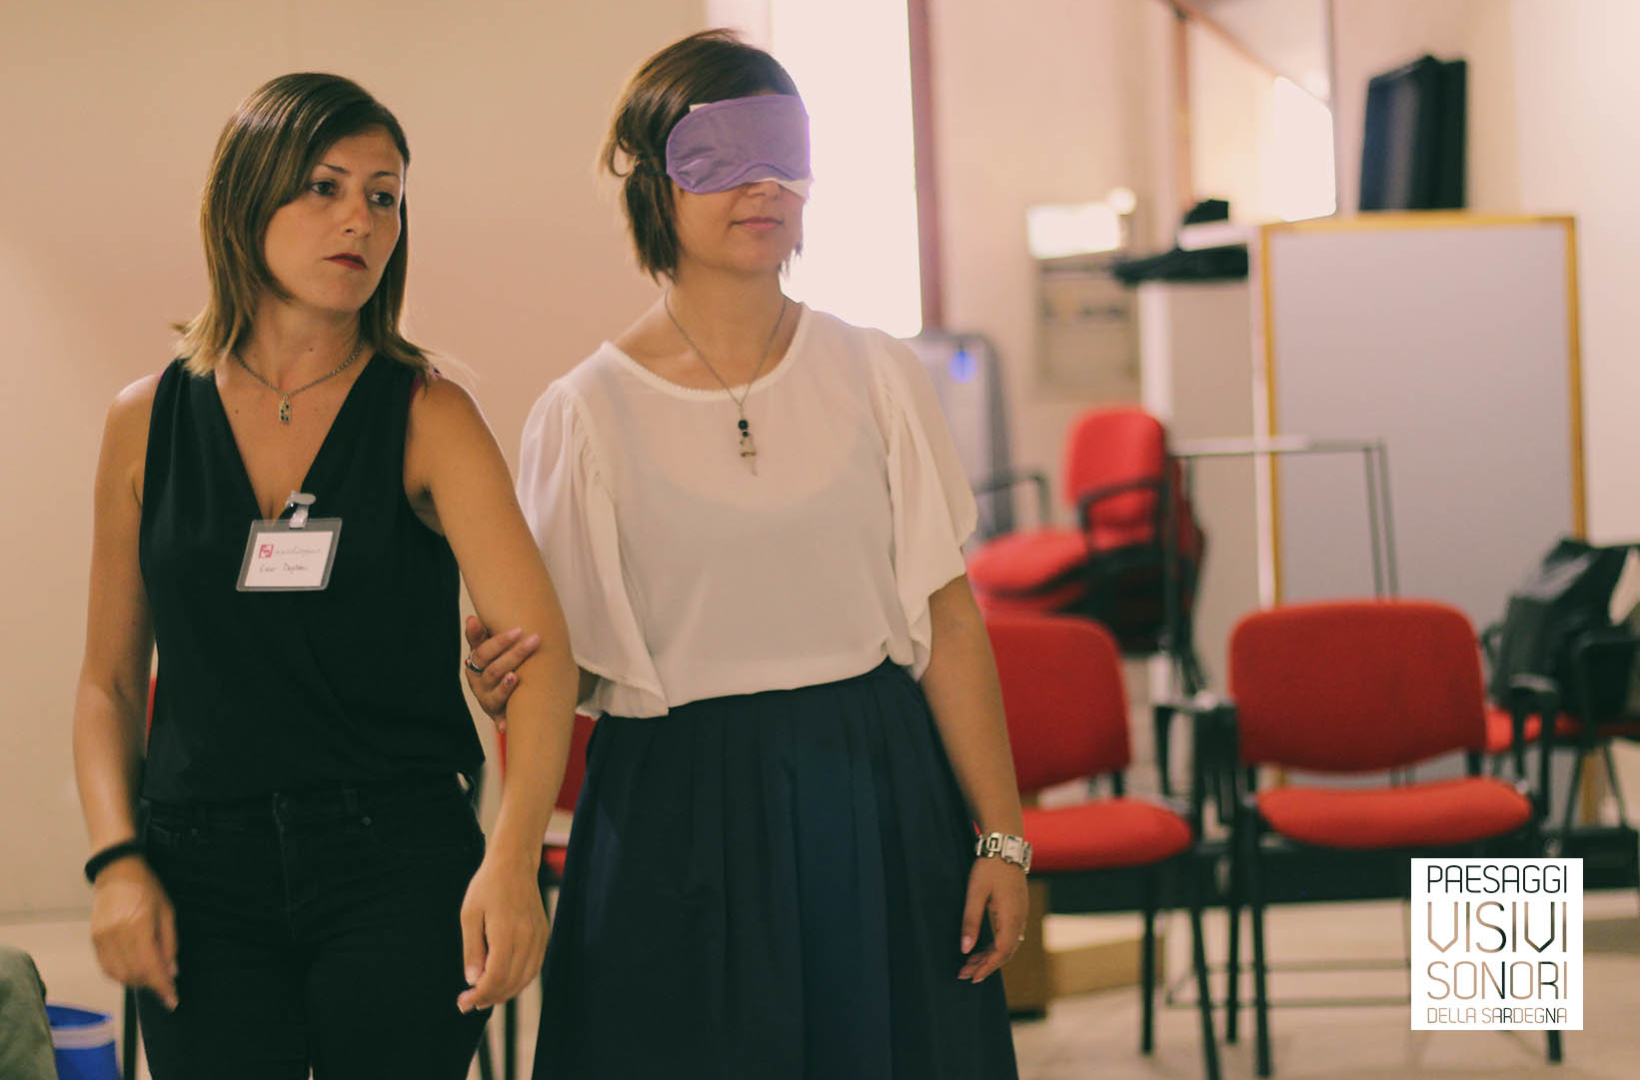 Paesaggi visivi e sonori all'EXMA - Laboratorio disabilità visive per la cultura accessibile